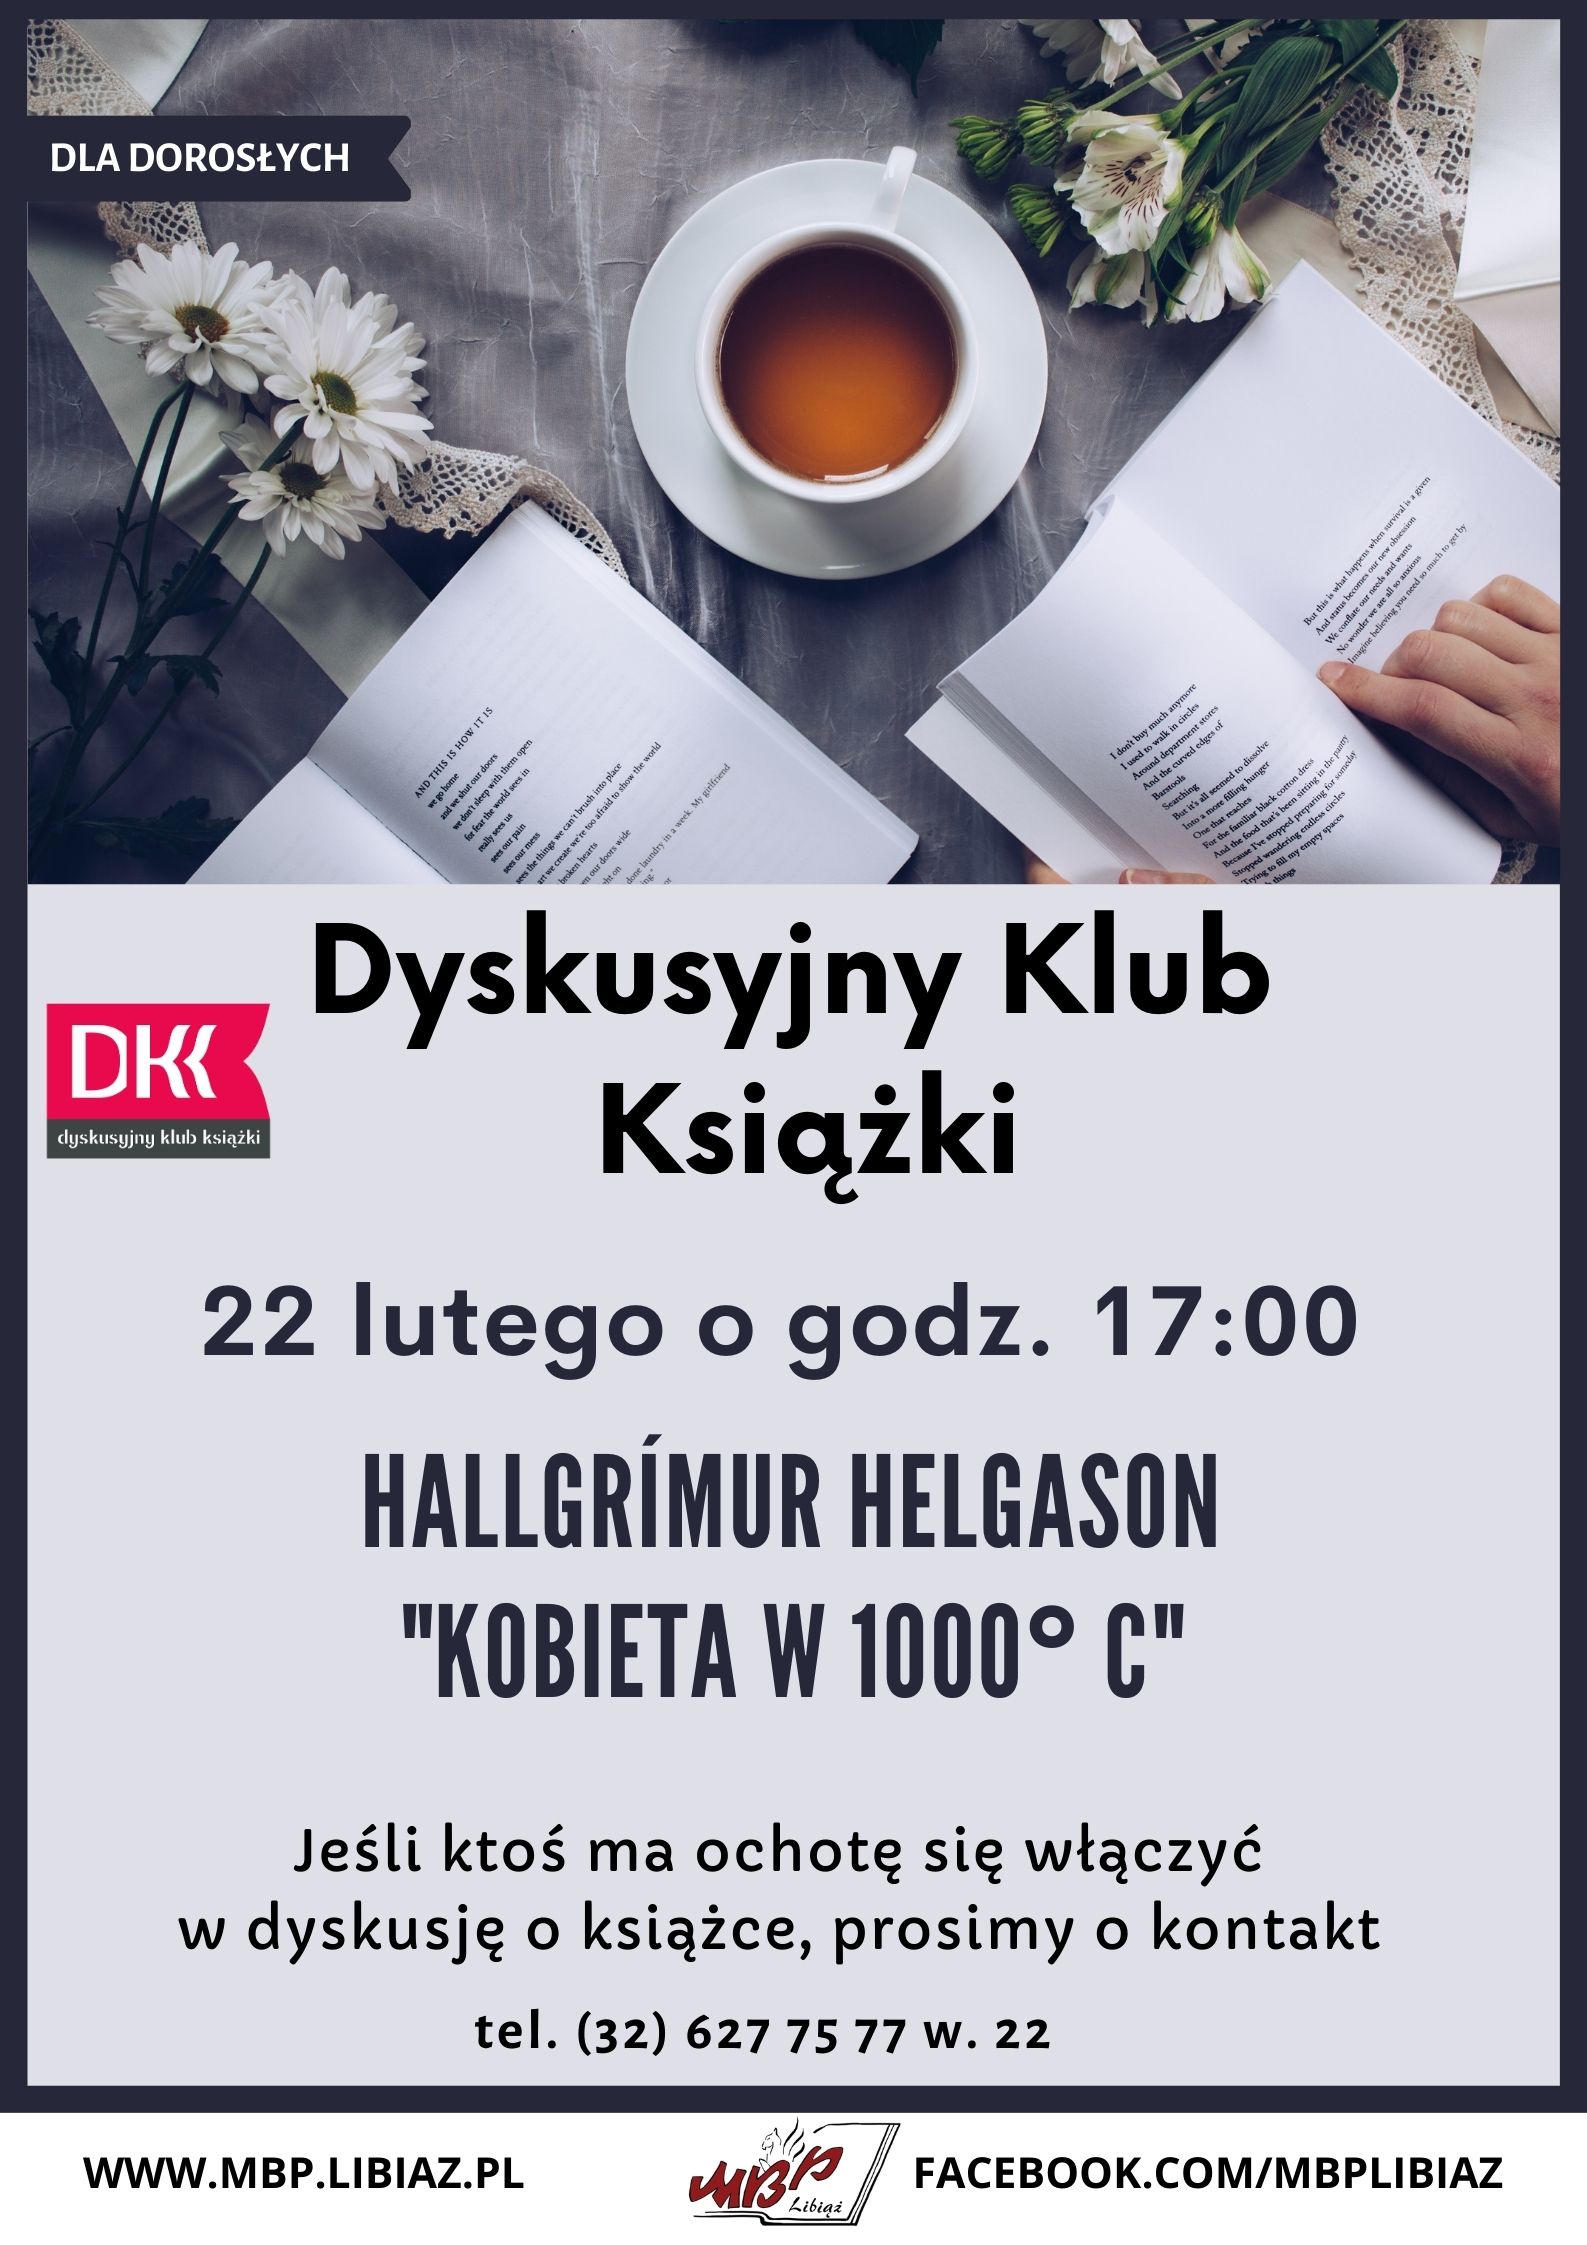 DKK nowy